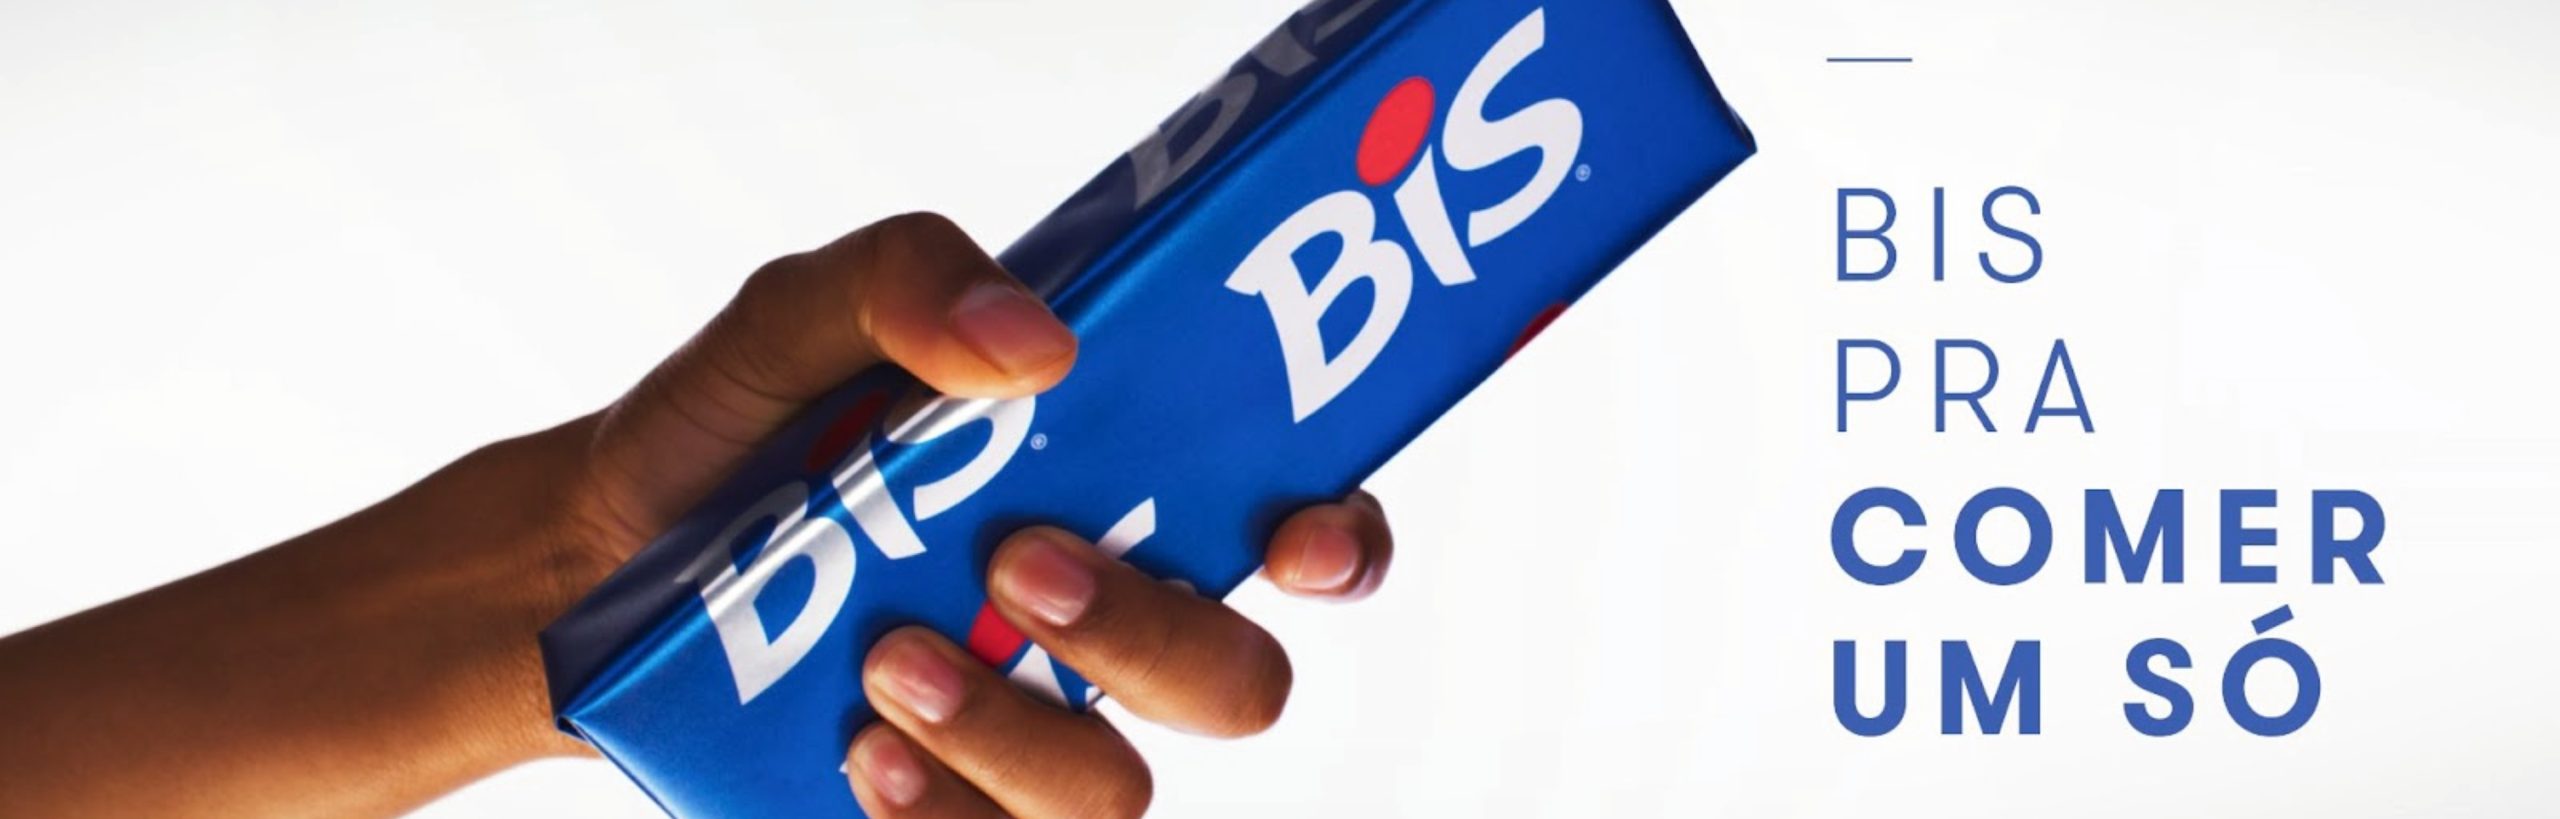 Nova campanha de BIS reforça o posicionamento #AssumaoDescontrole, apresenta produto fictício e resgata antigo pedido dos fãs